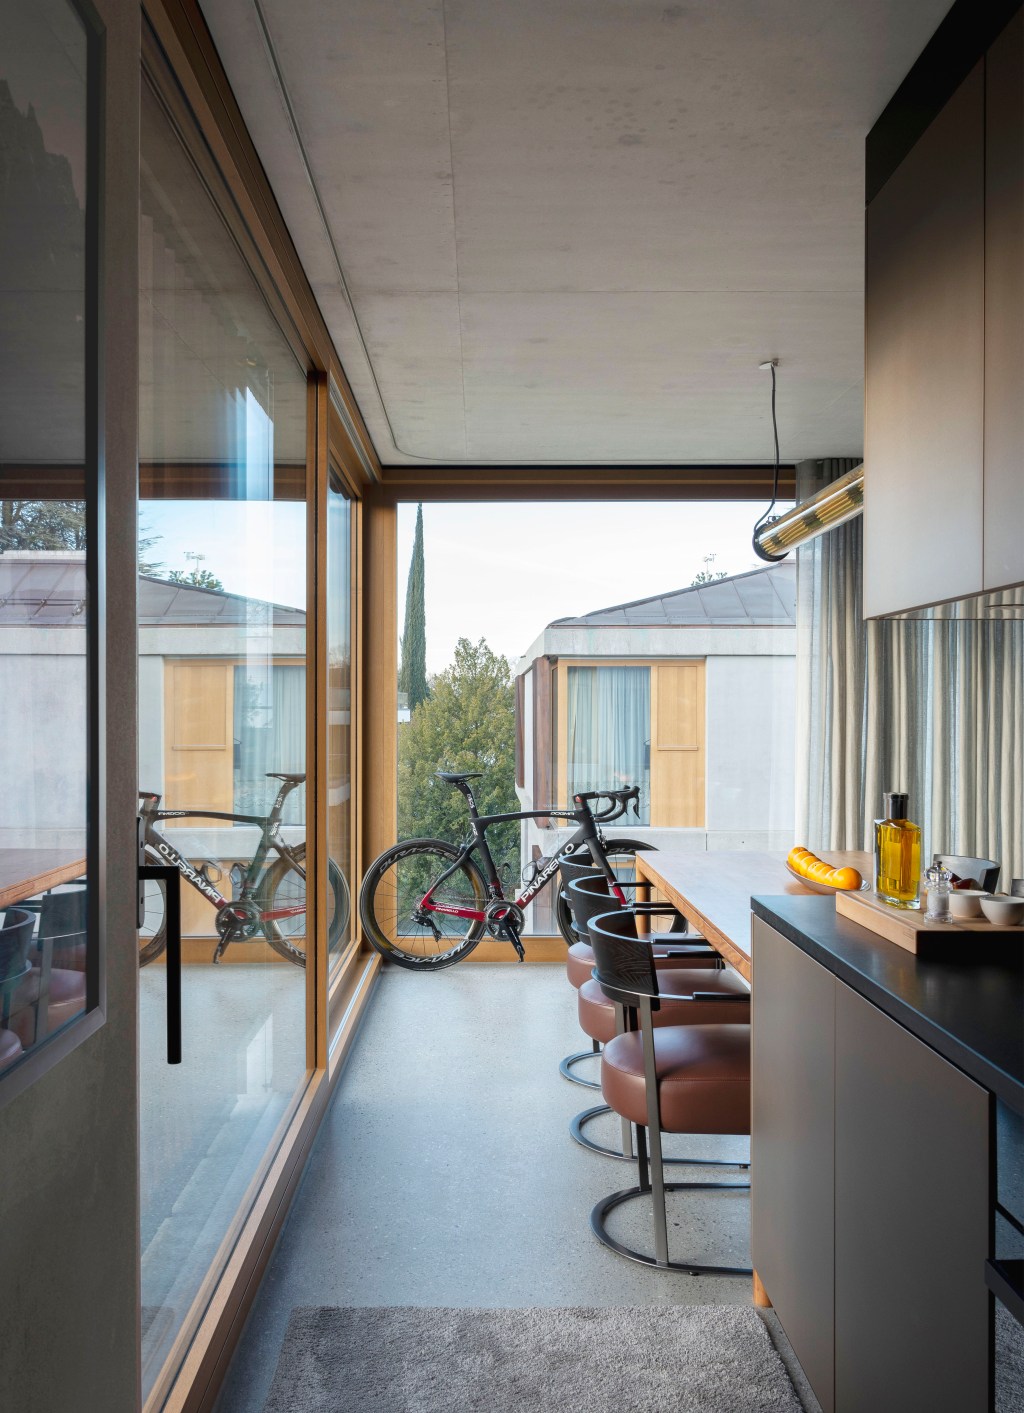 David Bastos projeta apartamento na Suíça repleto de design assinado. Na foto, cozinha com parede de vidro, bancada e bicicleta.